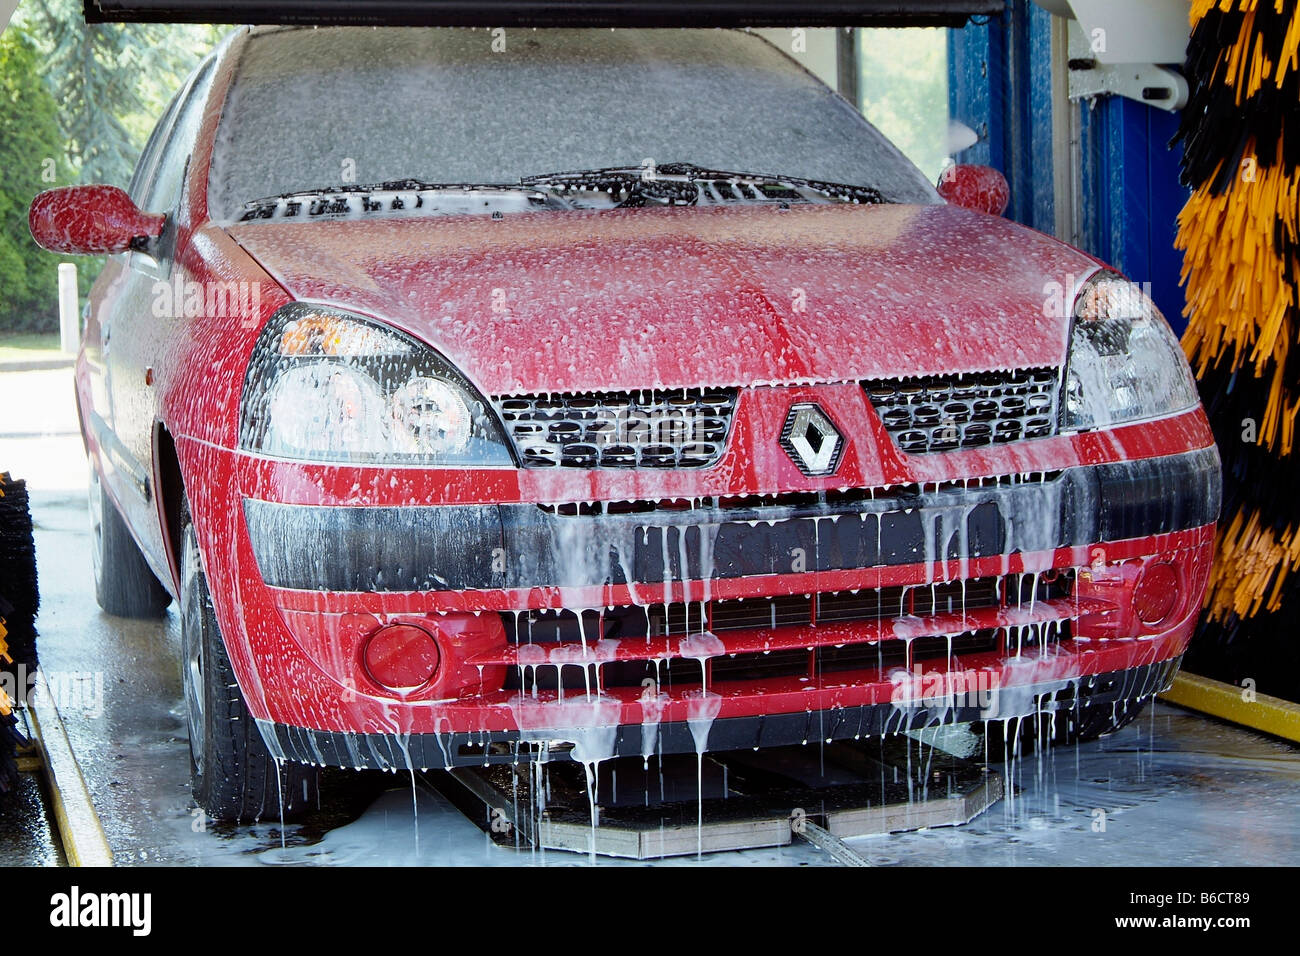 Renault Clio en lavage de voiture Banque D'Images